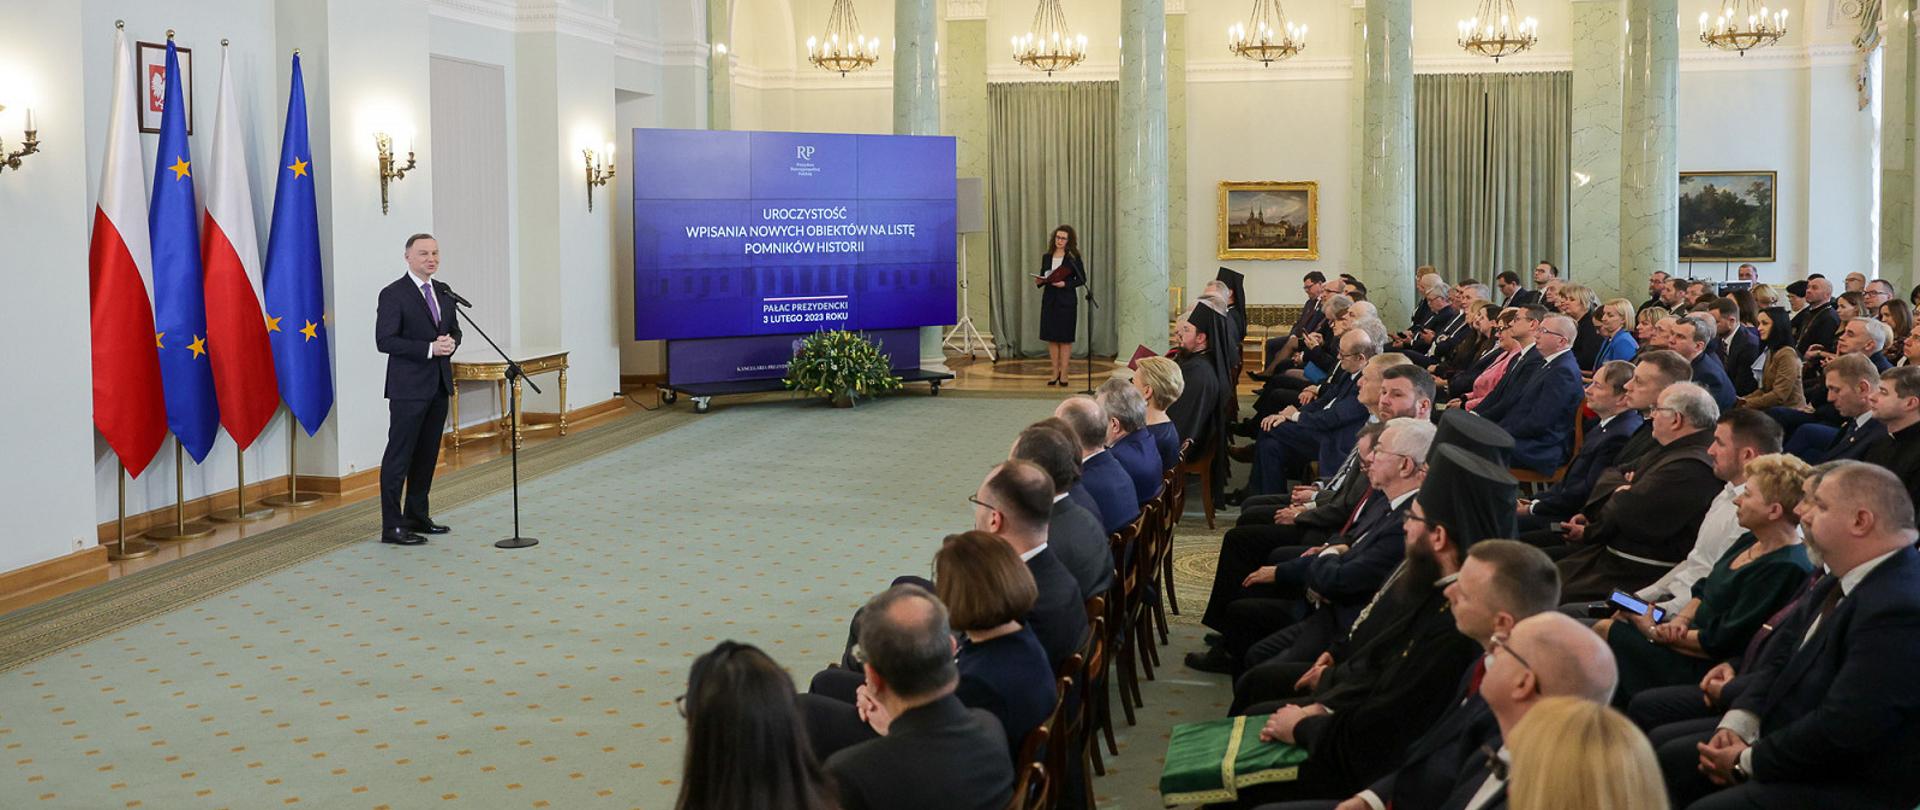 Widok z boku na dużą salę, z lewej pod flagami Polski i UE stoi prezydent Duda i mówi do mikrofonu na stojaku, z prawej na ustawionych w rzędy krzesłach siedzi dużo ludzi. W tle kolumny i żyrandole wiszące z sufitu.